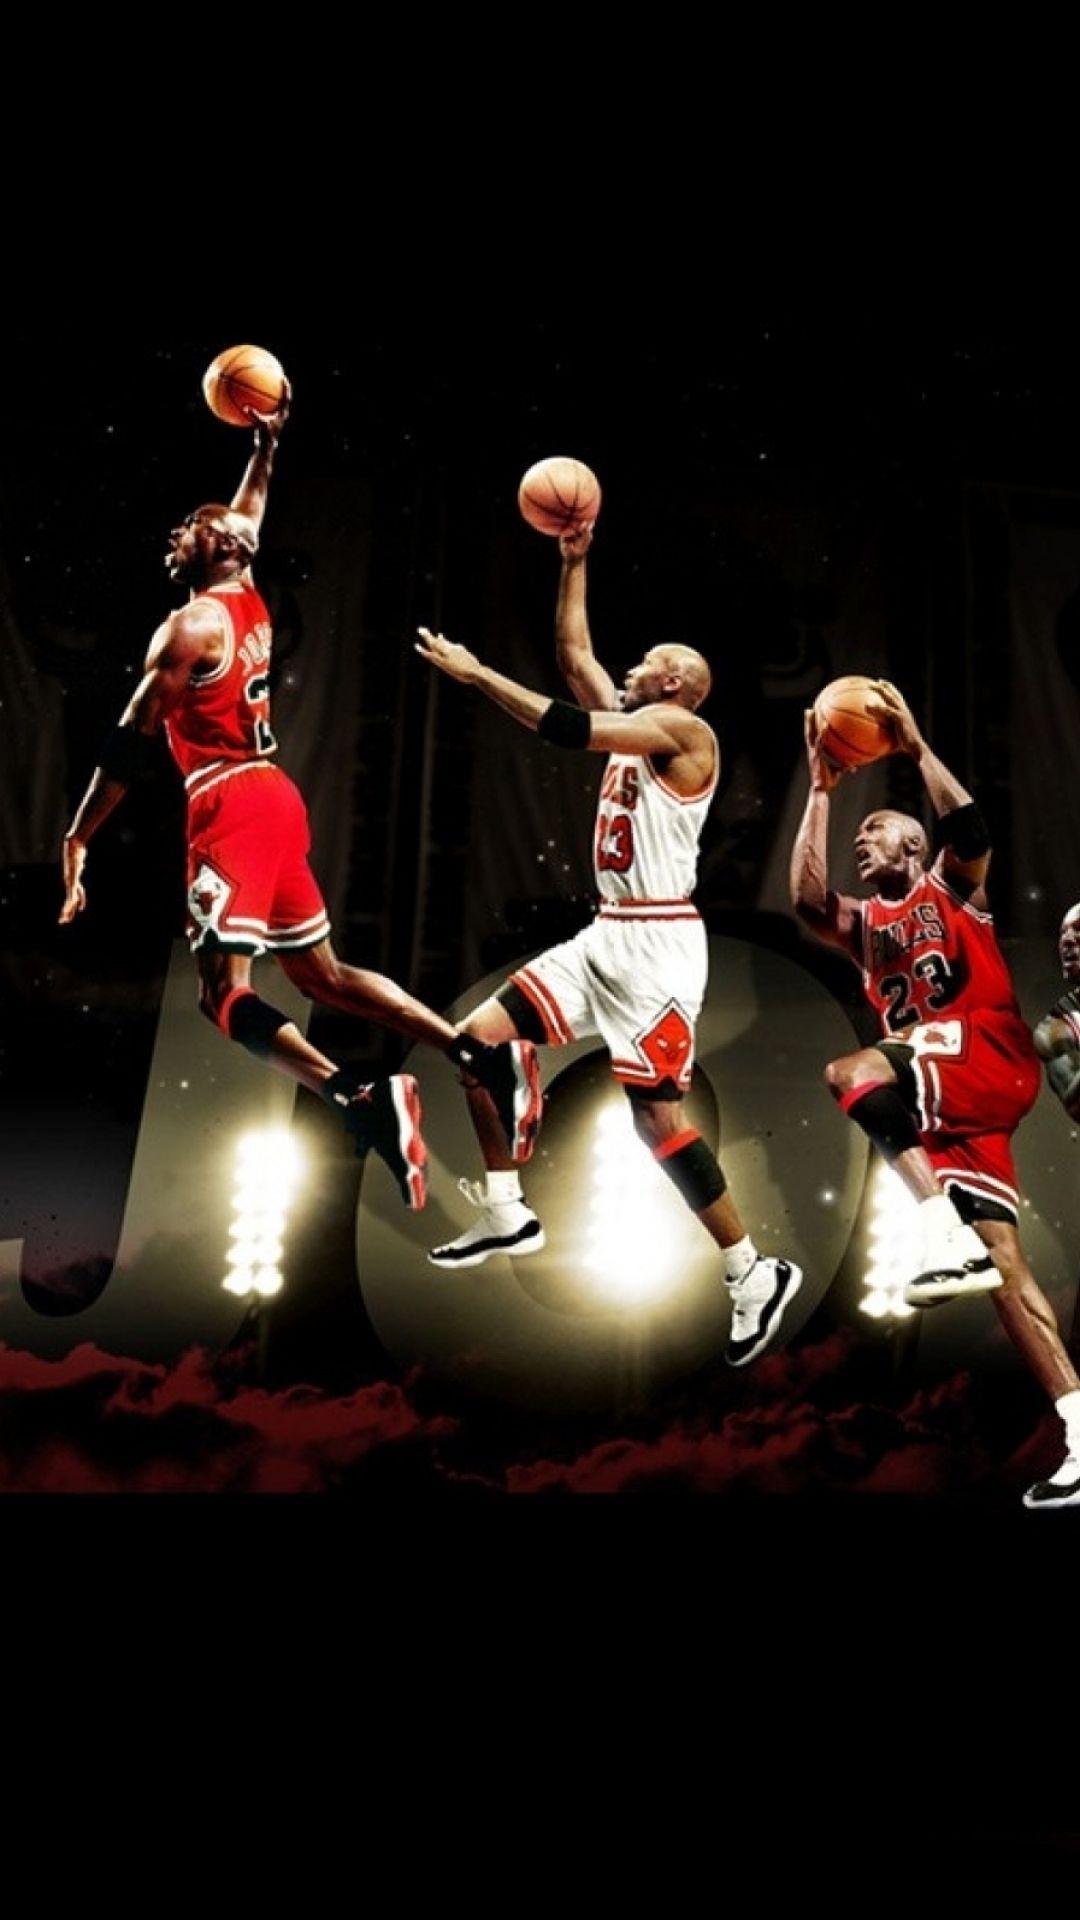 Michael Jordan Iphone Wallpapers Top Free Michael Jordan Iphone Backgrounds Wallpaperaccess